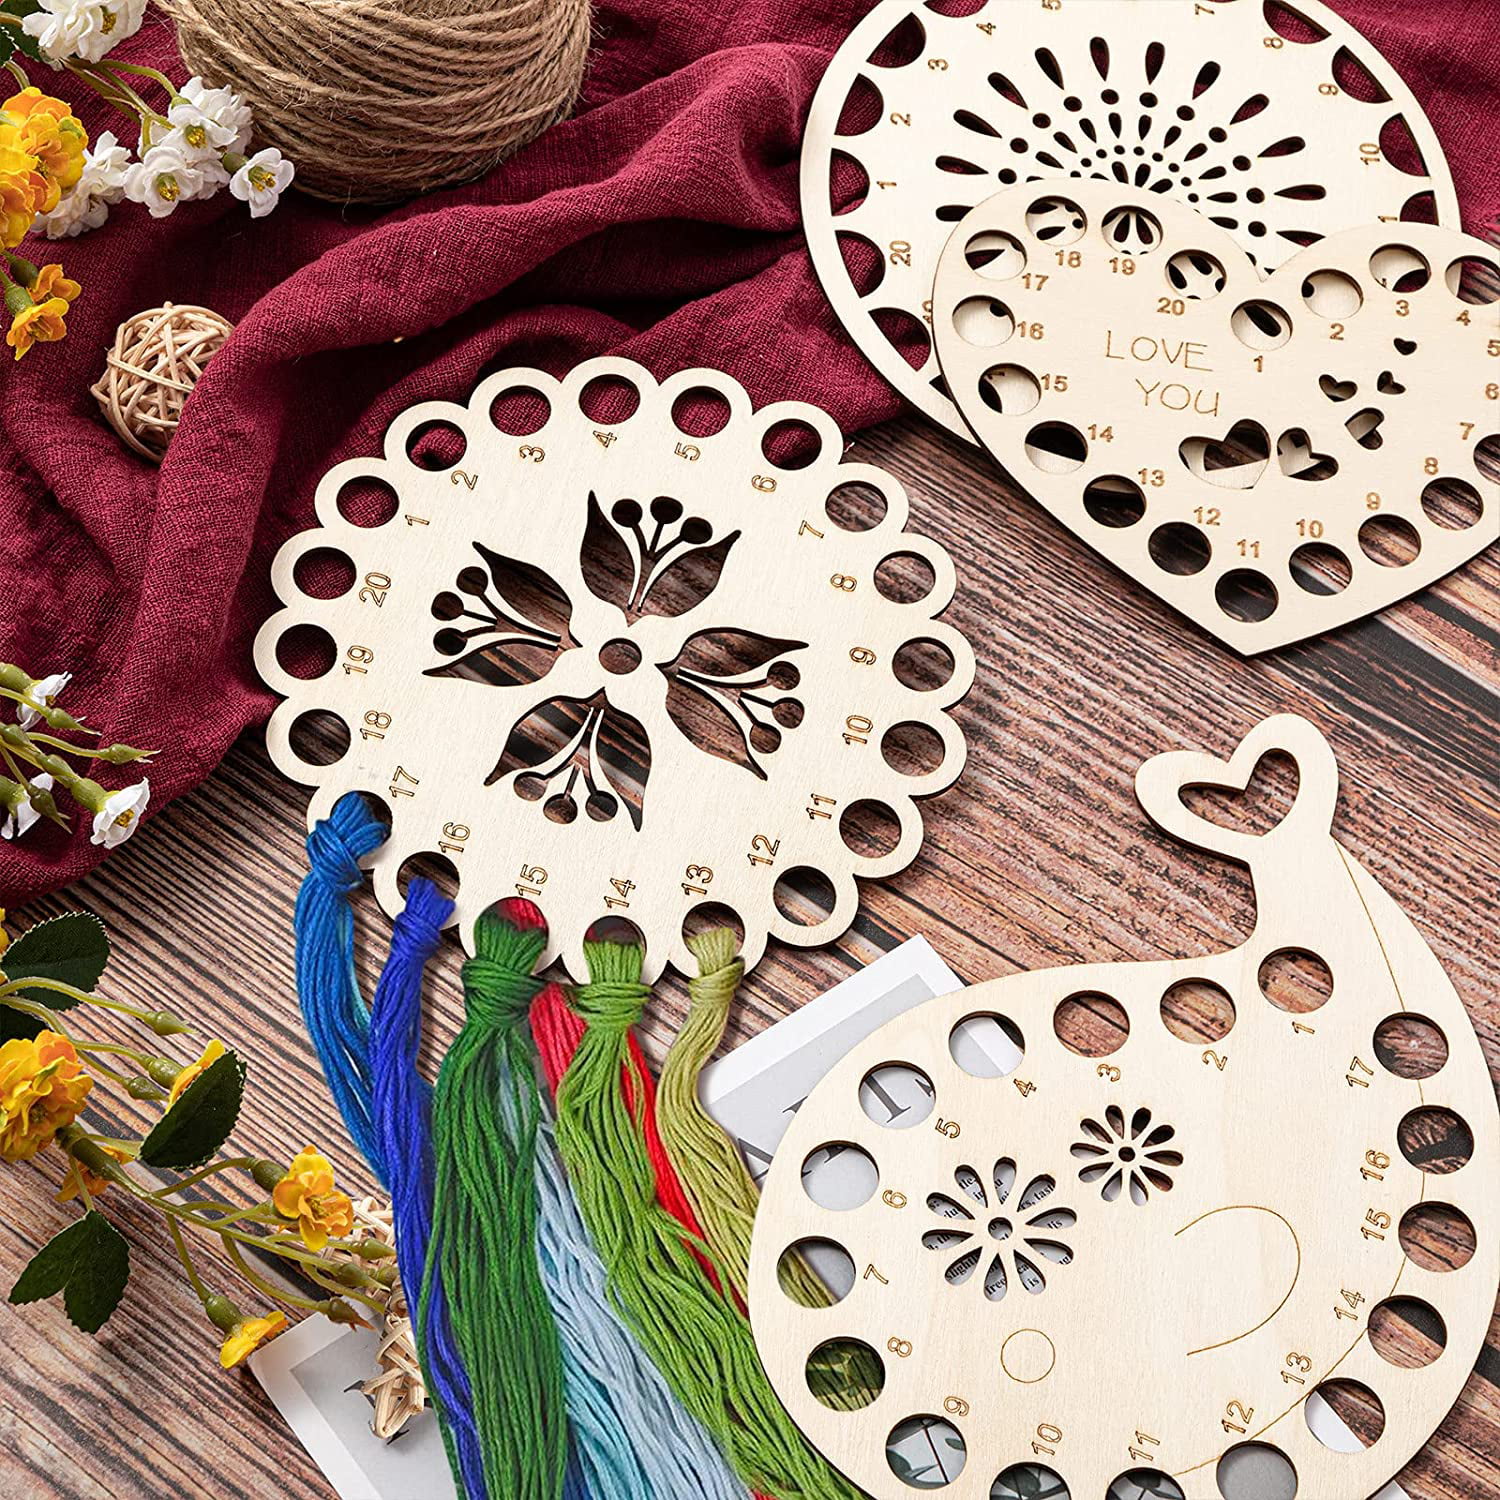 Wooden Embroidery Floss Thread Holder Organizer (1 Piece) 6 Inch / 15 CM 2  MM Thick Round Flower Pattern Needlework Cross Stitching Kit, Sewing Kits,  सिलाई सहायक उपकरण - Aumni Source Retail